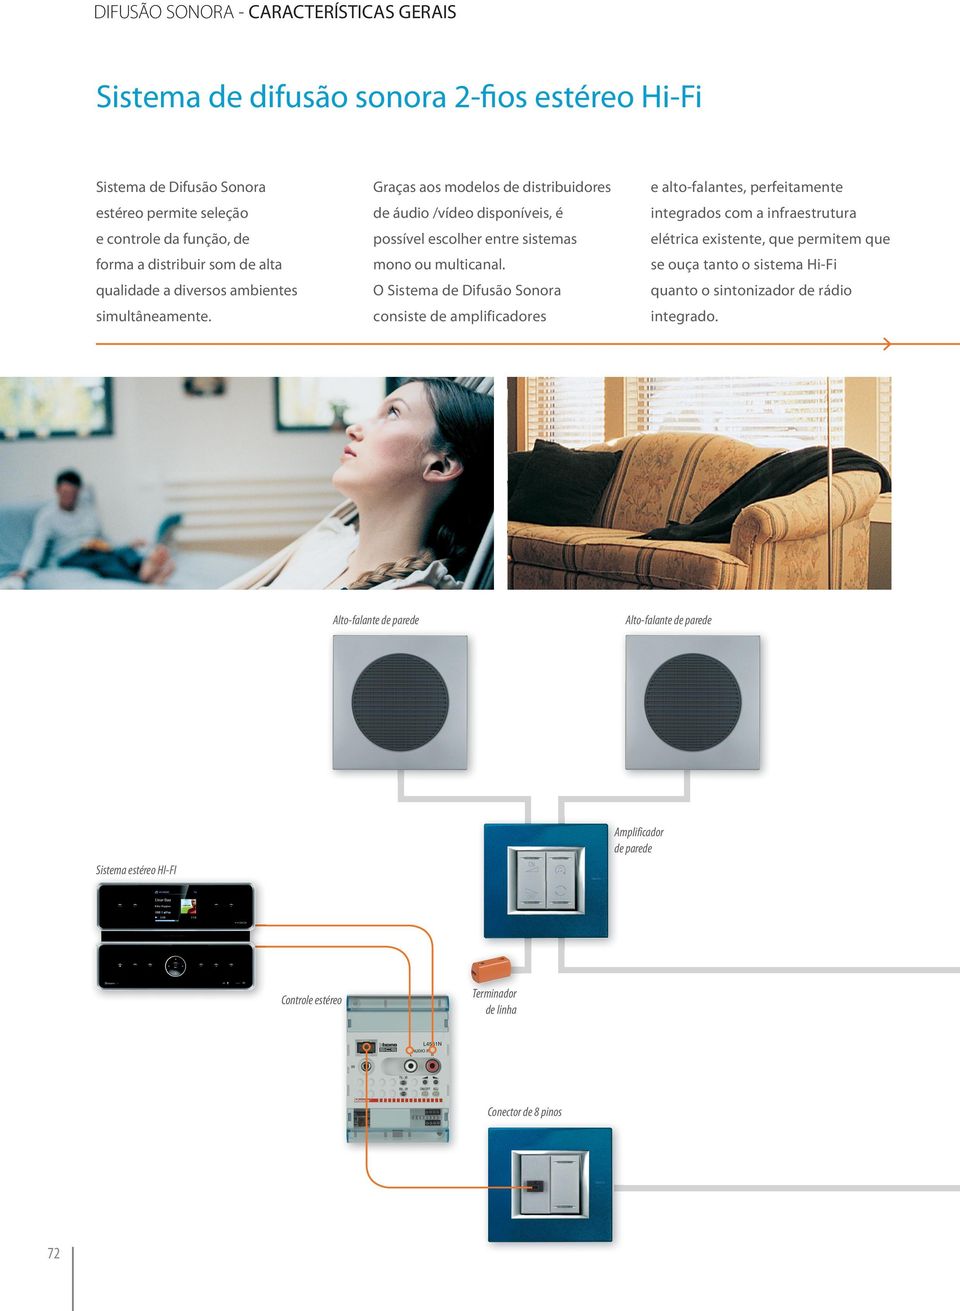 Graças aos modelos de distribuidores de áudio /vídeo disponíveis, é possível escolher entre sistemas mono ou multicanal.